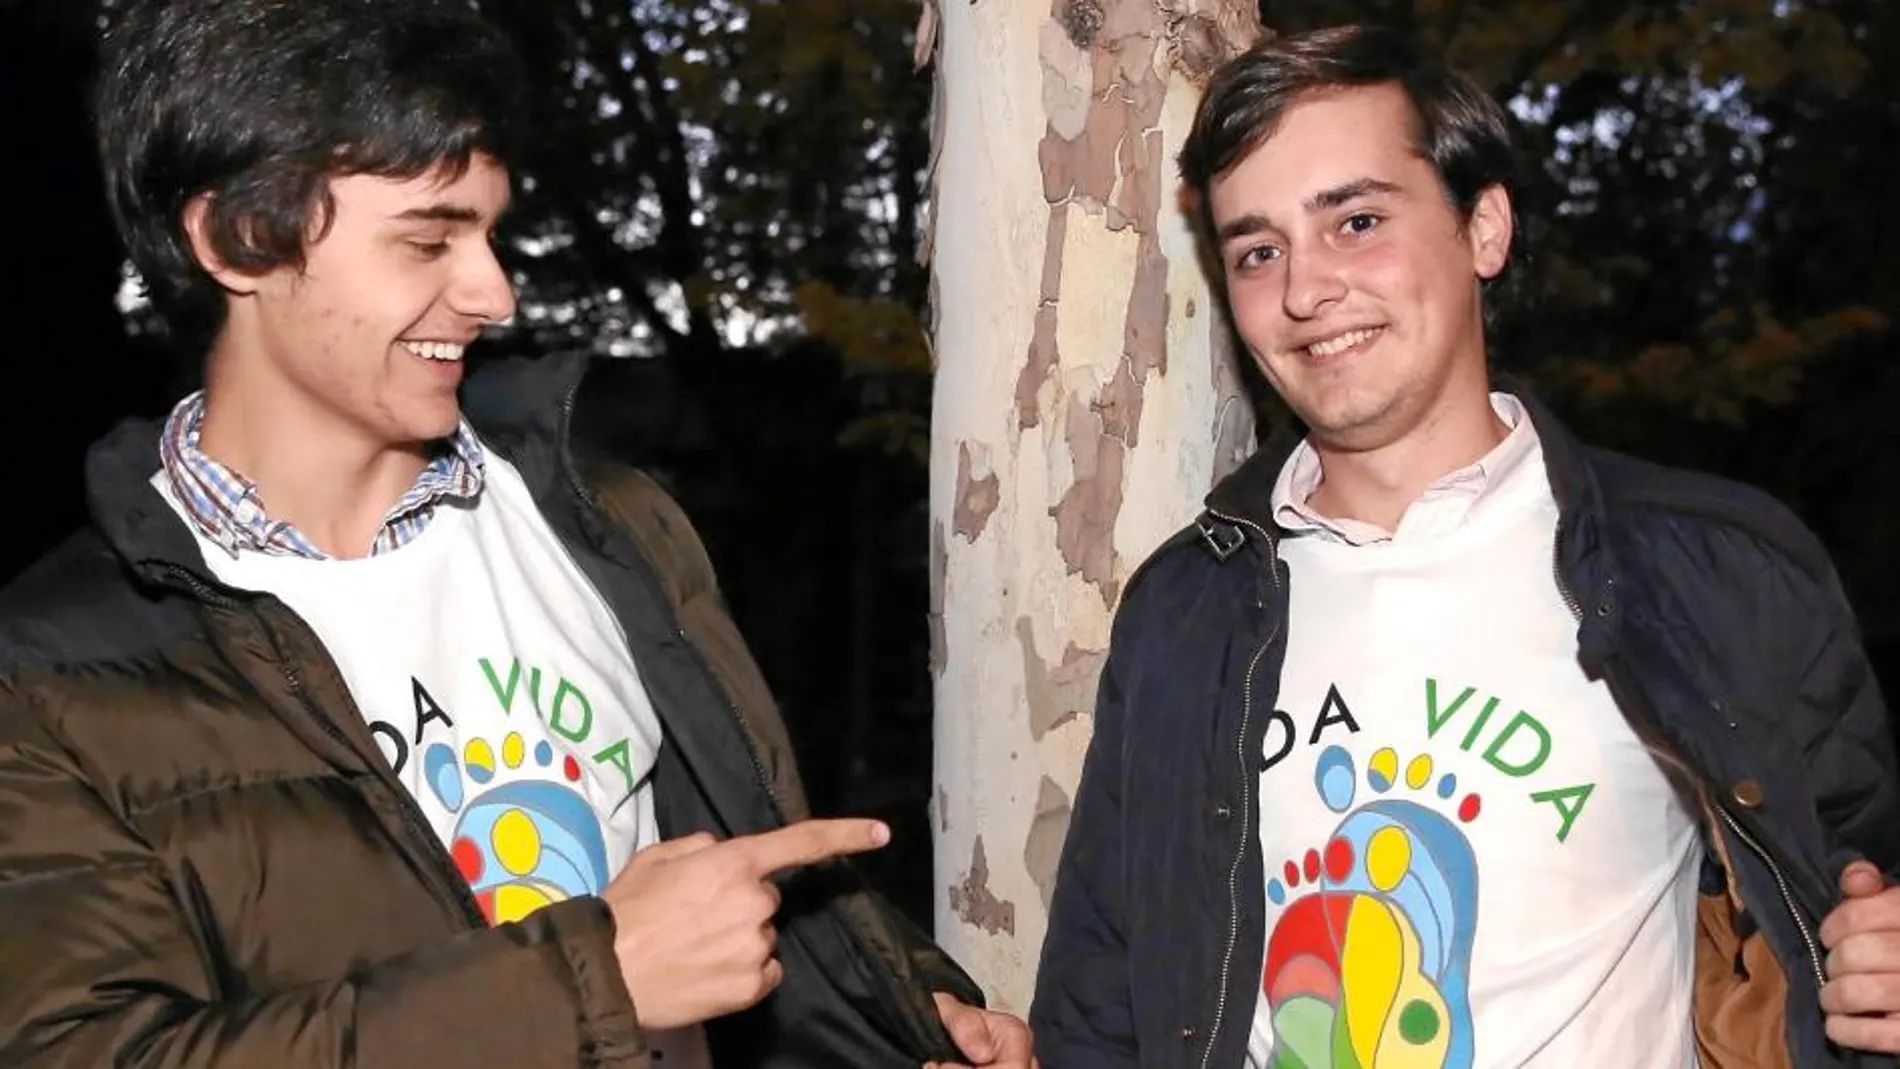 Duarte Falcó y Álvaro Ortega, fundadores de la asociación Más Vida, con las camisetas de la protesta